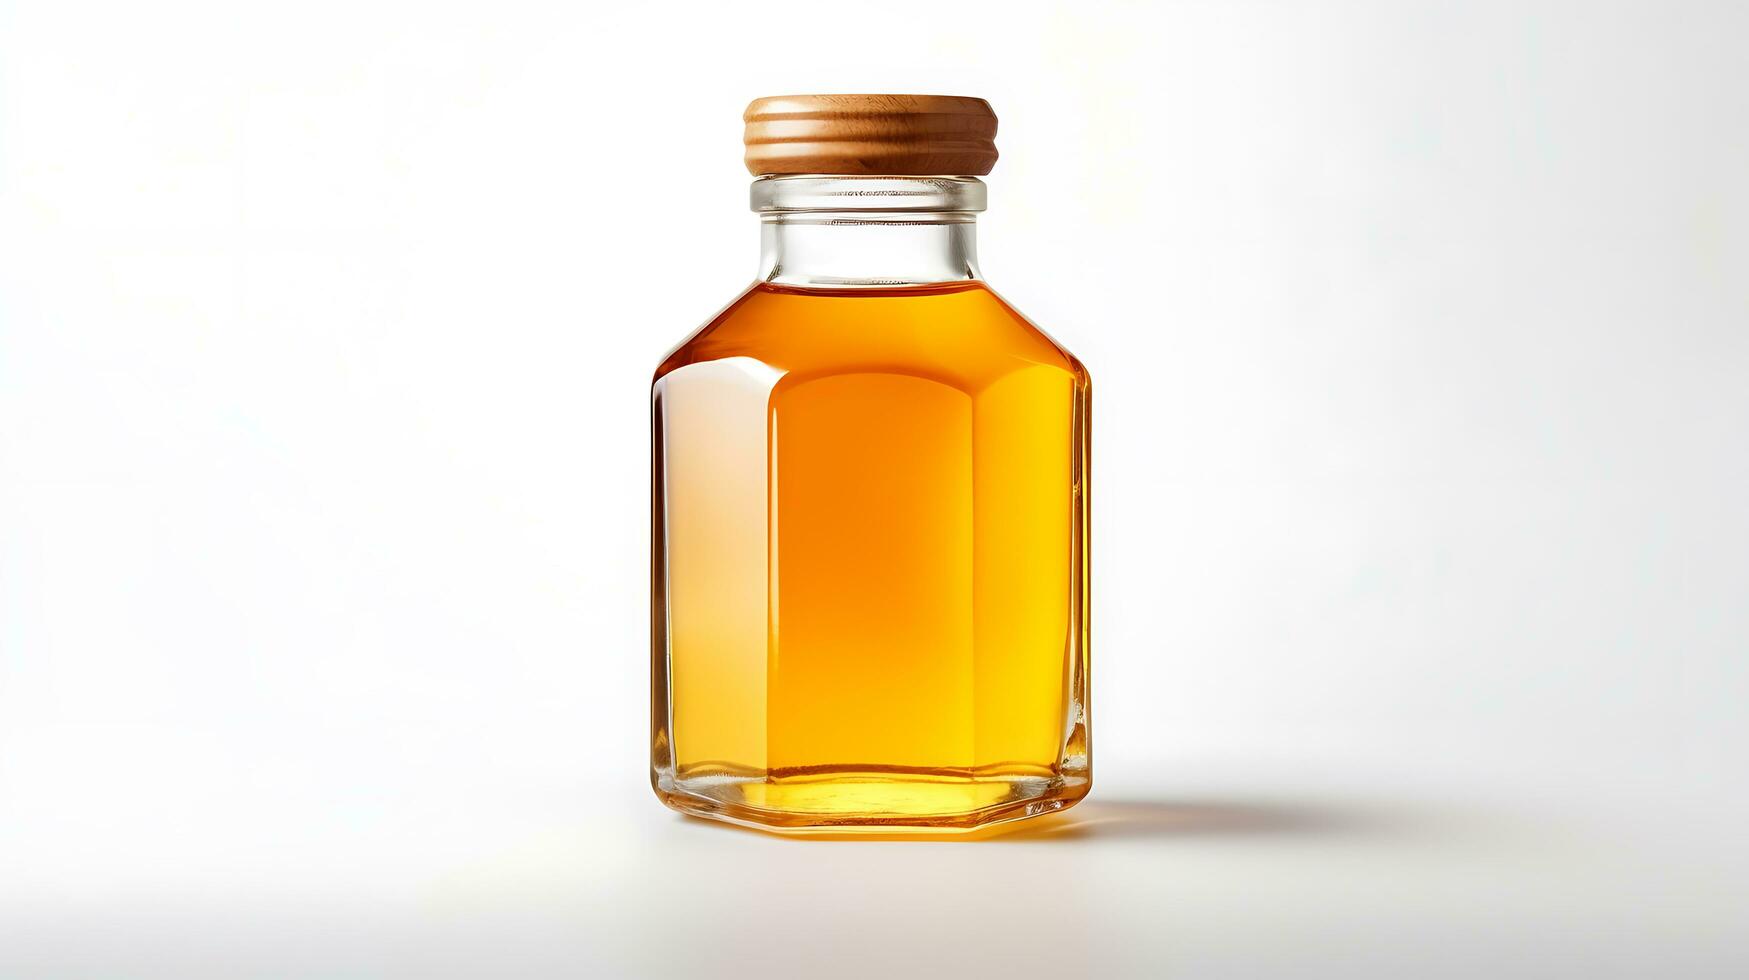 AI generated honey jar on white background photo